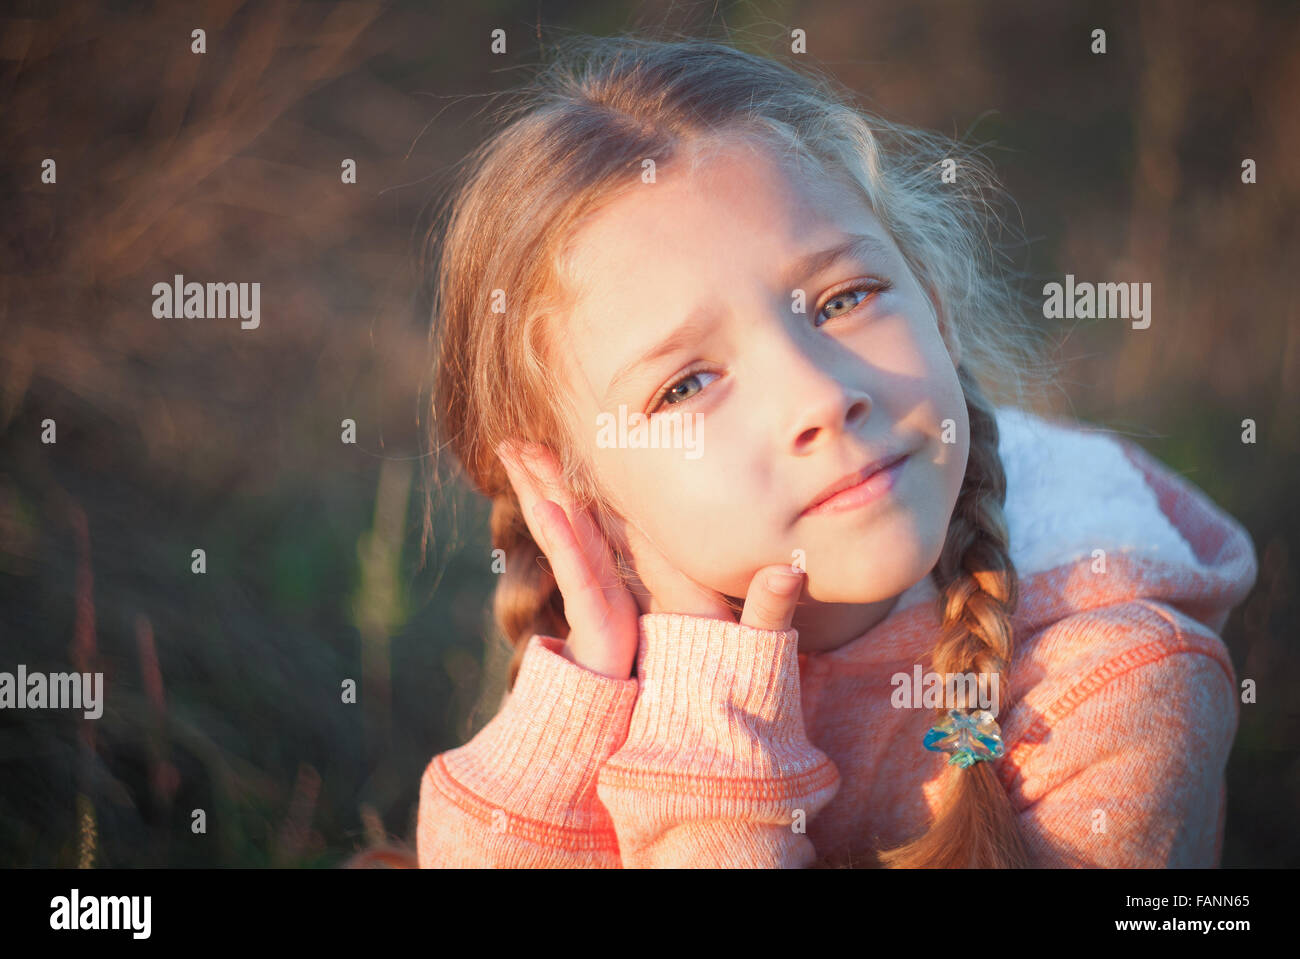 Porträt von einem kleinen Mädchen mit blauen Augen und Zöpfen Stockfoto